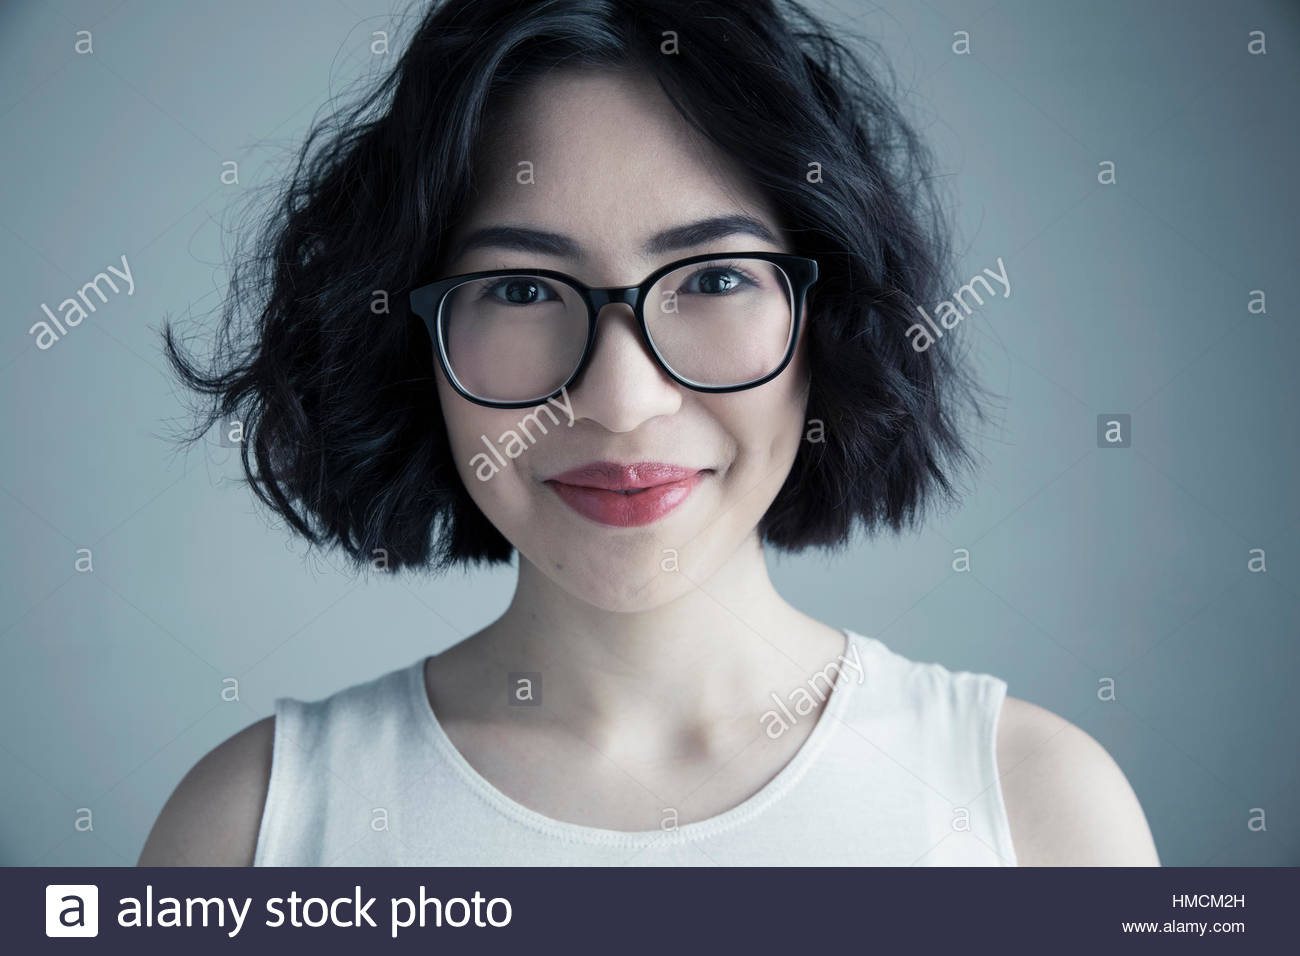 Close up portrait of smiling mixed race jeune femme avec des cheveux noirs et lunettes Banque D'Images